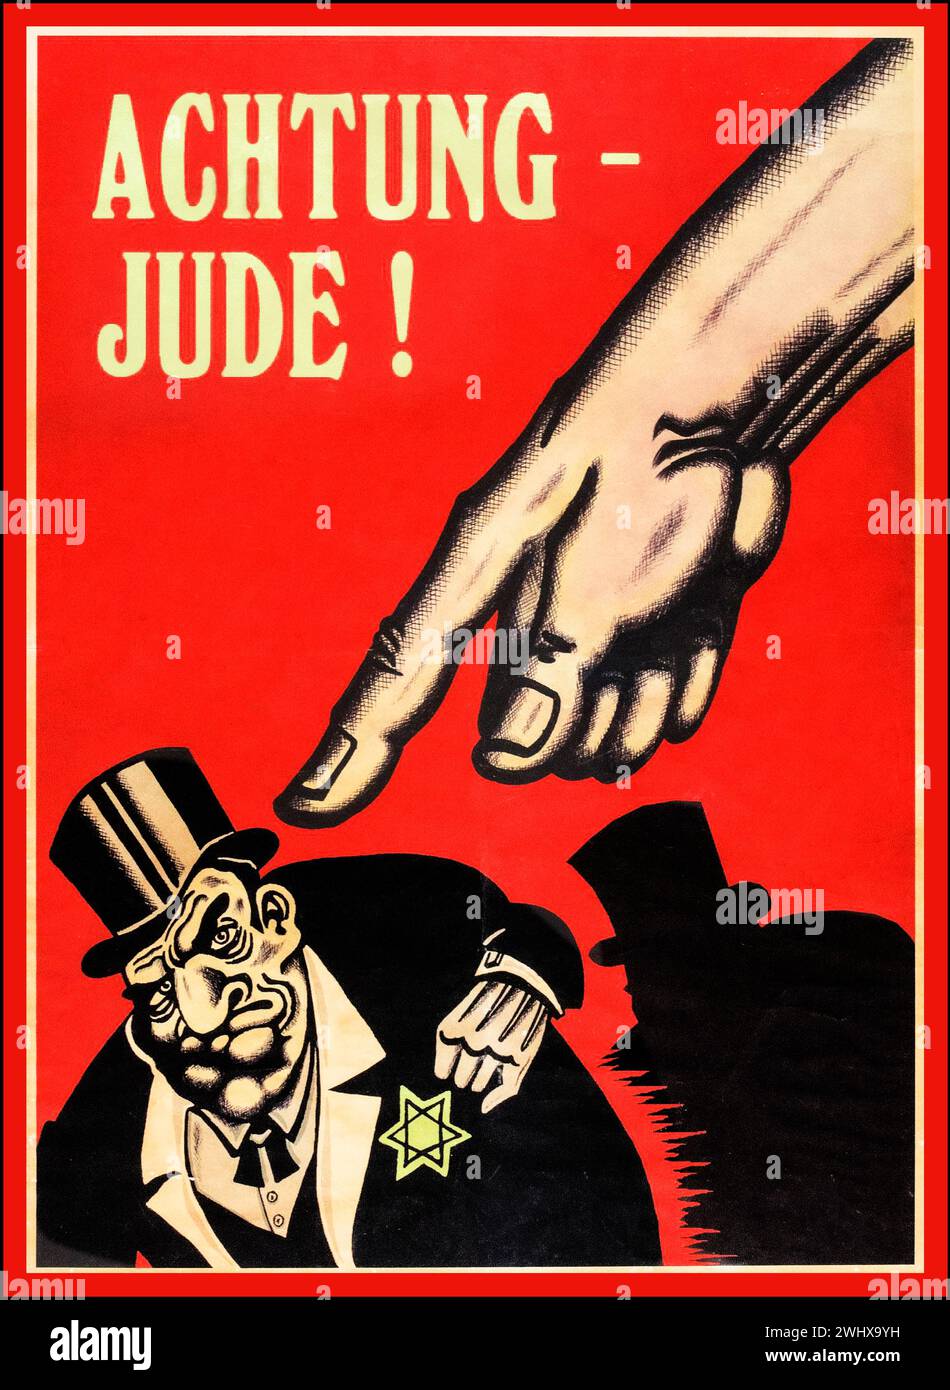 ACHTUNG JUDE WW2 1940er Jahre antisemitischer antijüdischer Rassist Nazi-Deutschland Propaganda Nazi Party Dritte Reich Poster, fürchtet eine gewaltige Hand, die auf einen jüdischen Karikaturmann zeigt, der einen Geschäftsanzug und einen Hut mit dem „Davidstern“ auf der Brust trägt. Das Poster trägt den Titel: 'ACHTUNG - JUDE!' („ACHTUNG – JUDE!“). Stockfoto